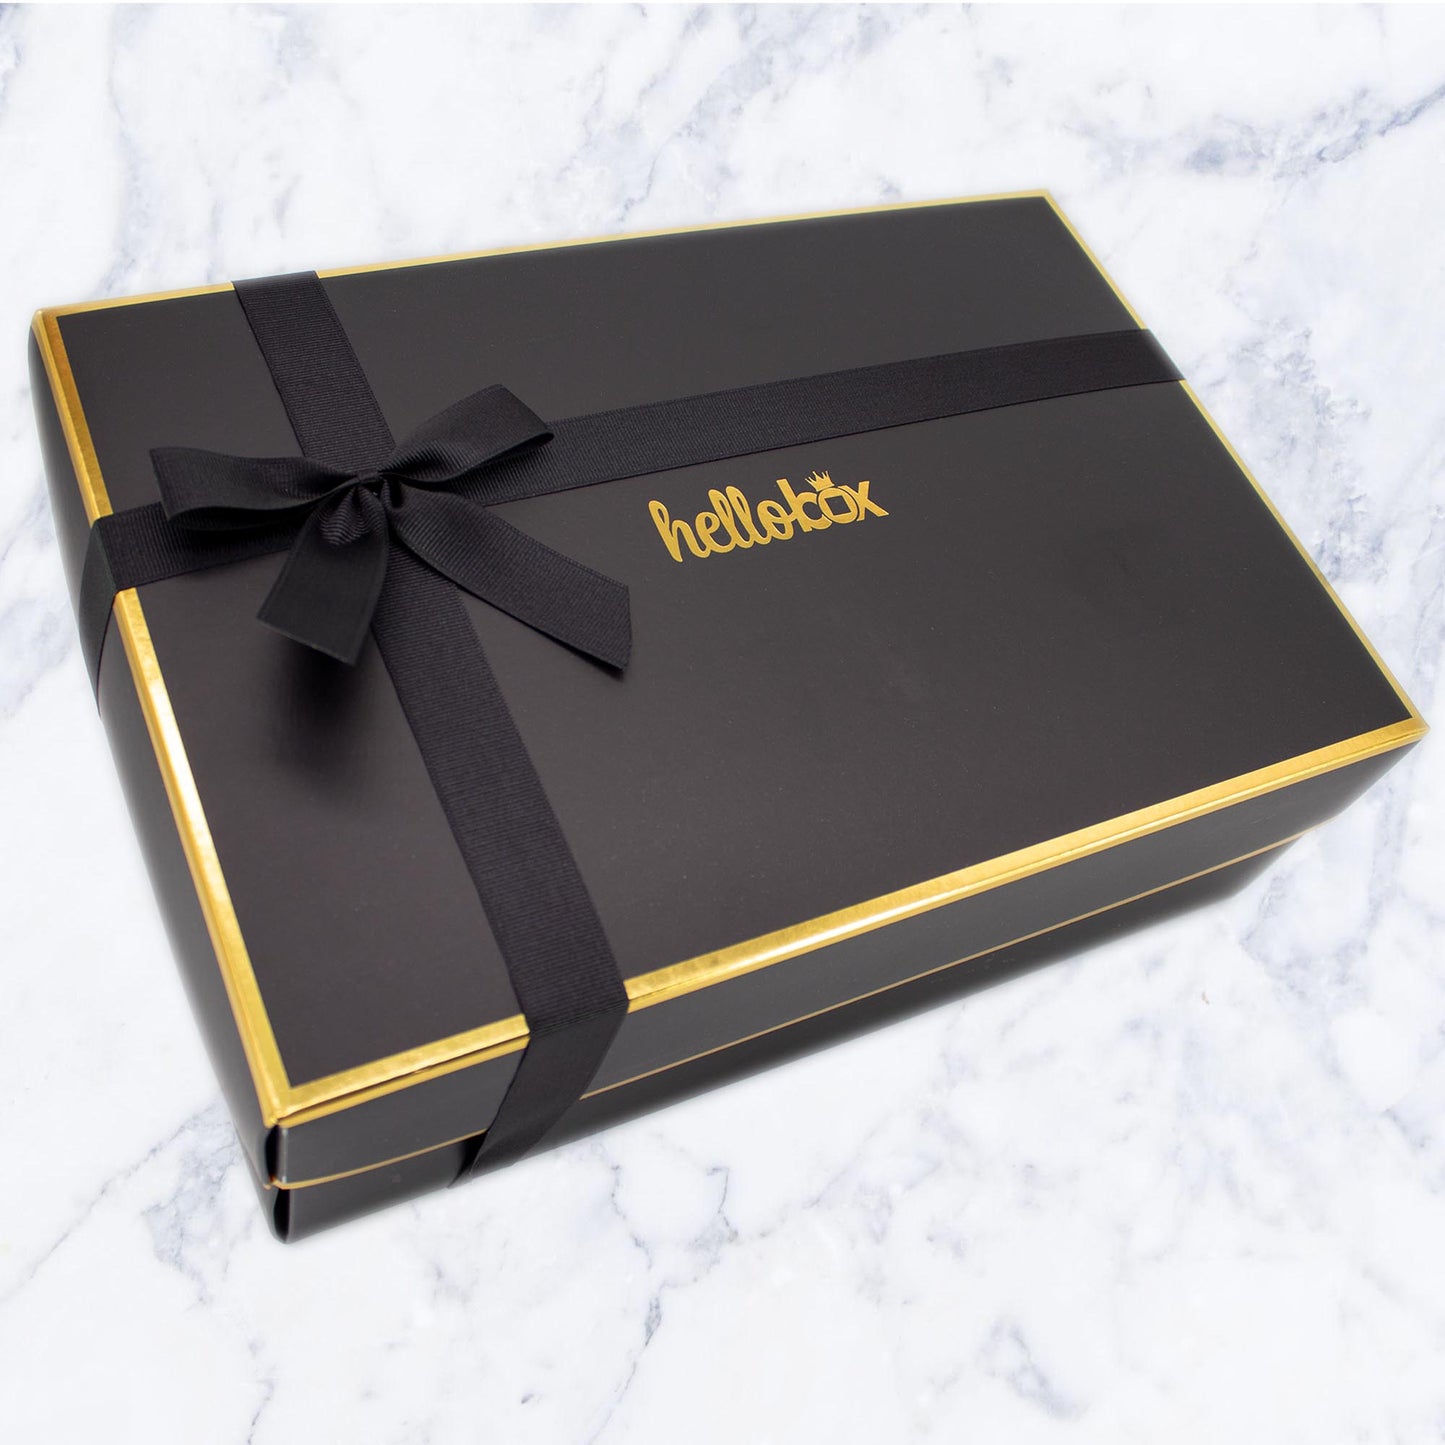 Exellence Elegant gift box for men